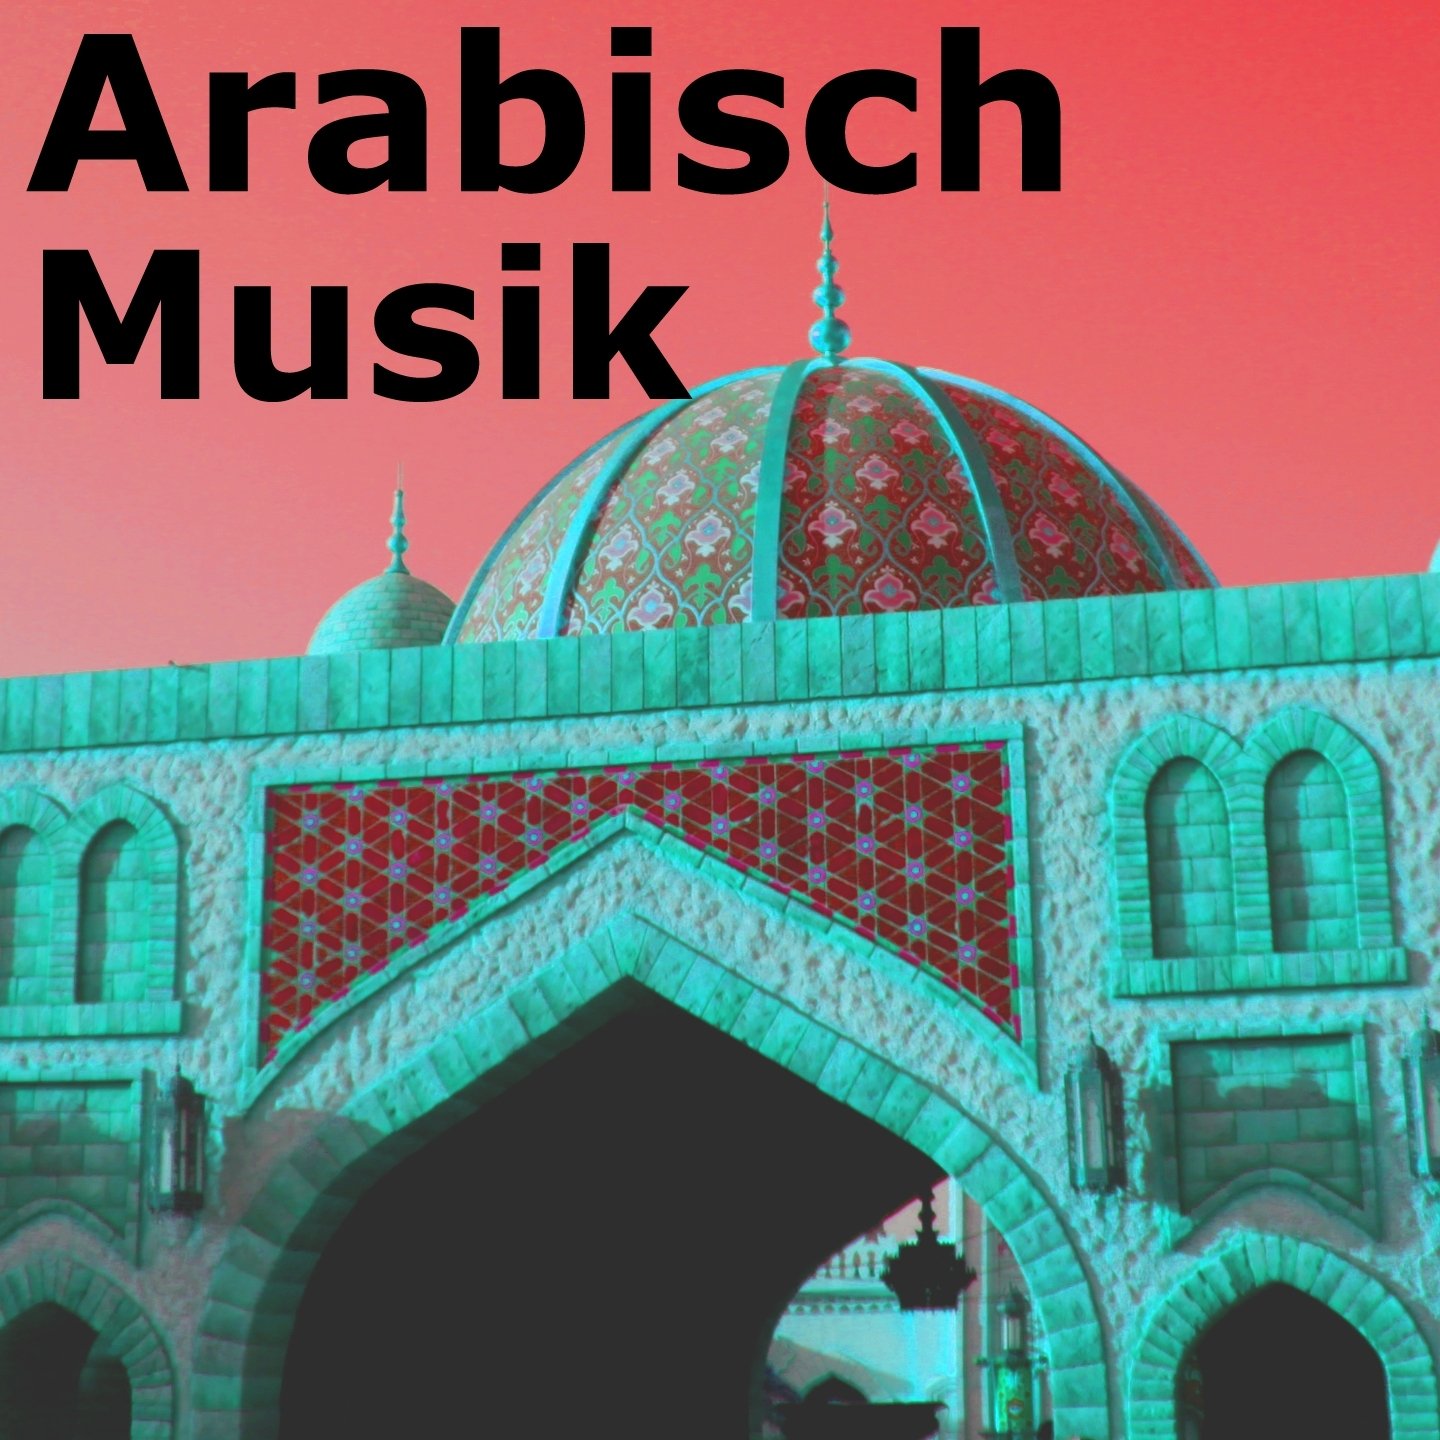 Новинки арабской музыки. Арабские композиции. Арабик Мьюзик. Музыкальный арабский мир. Обложки с арабских песен.